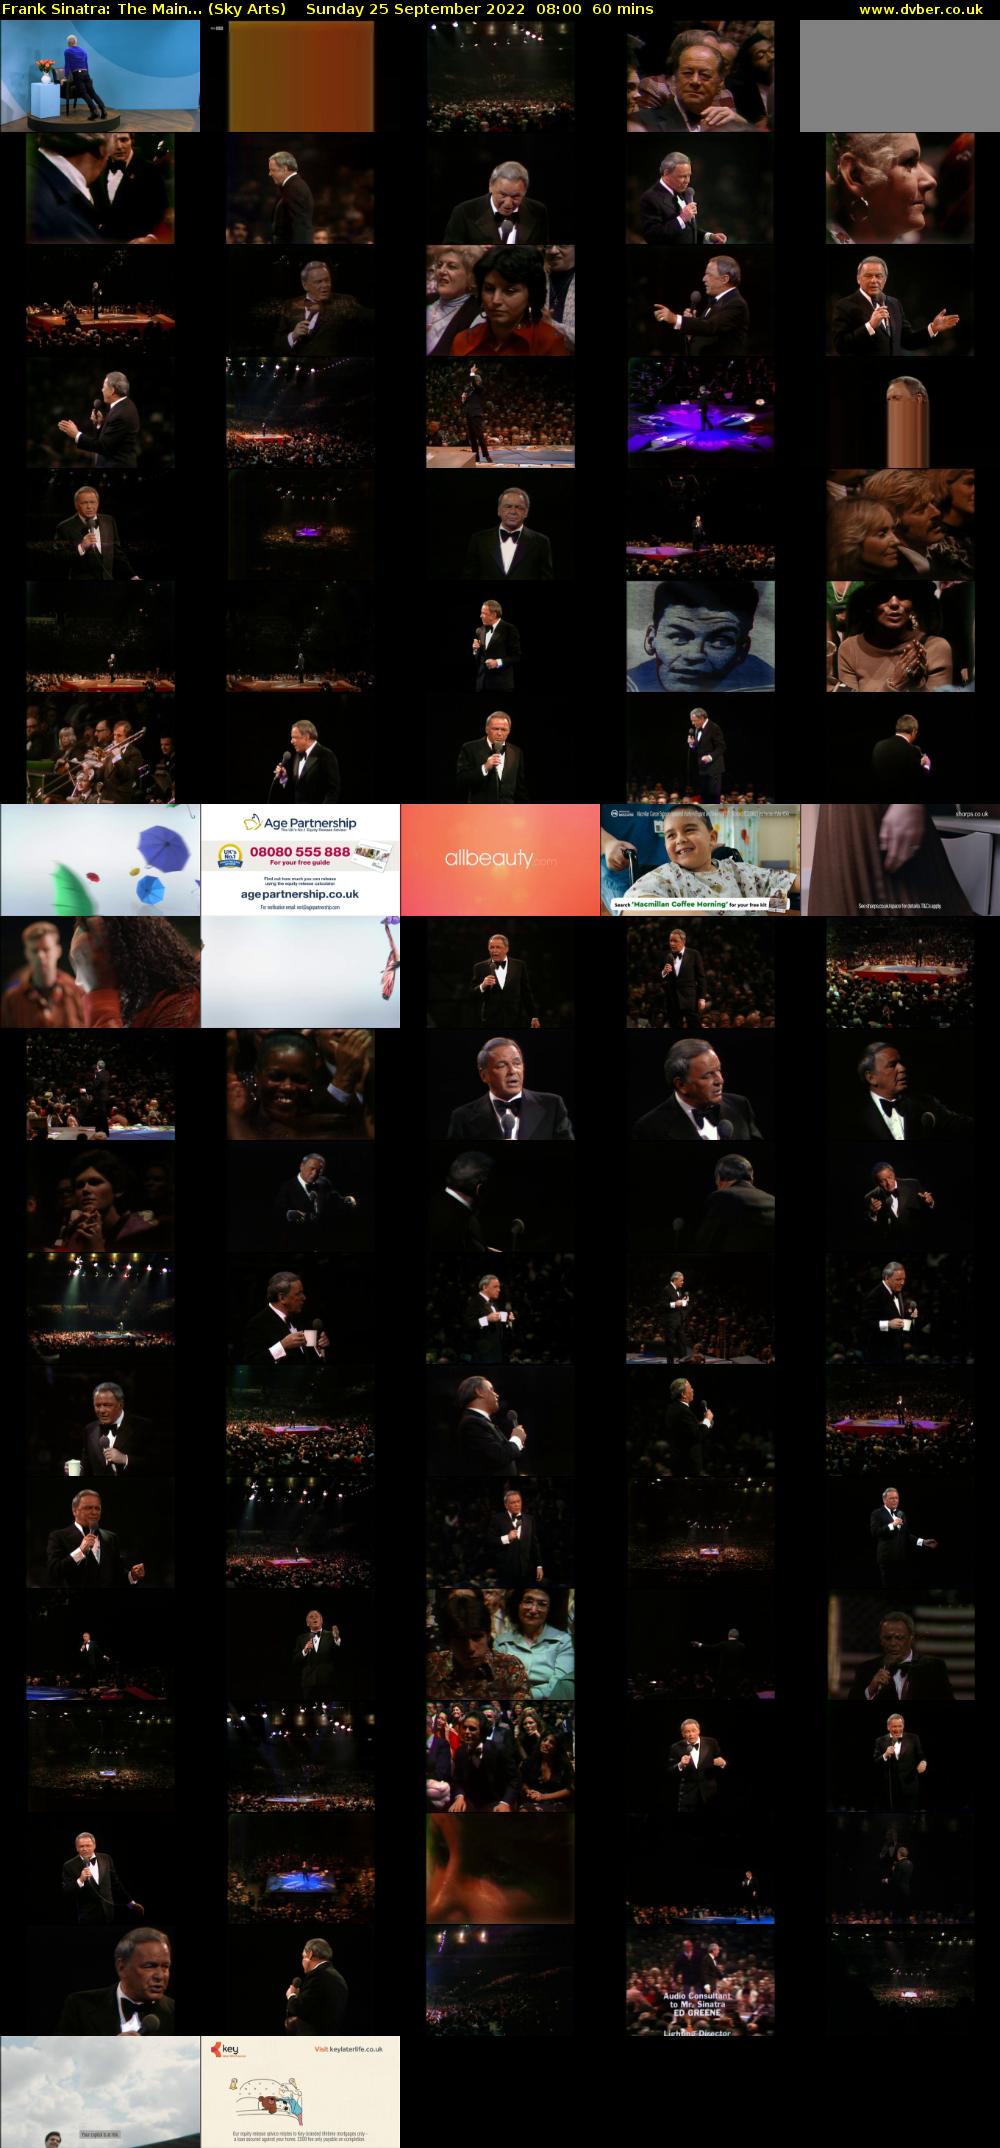 Frank Sinatra: The Main... (Sky Arts) Sunday 25 September 2022 08:00 - 09:00